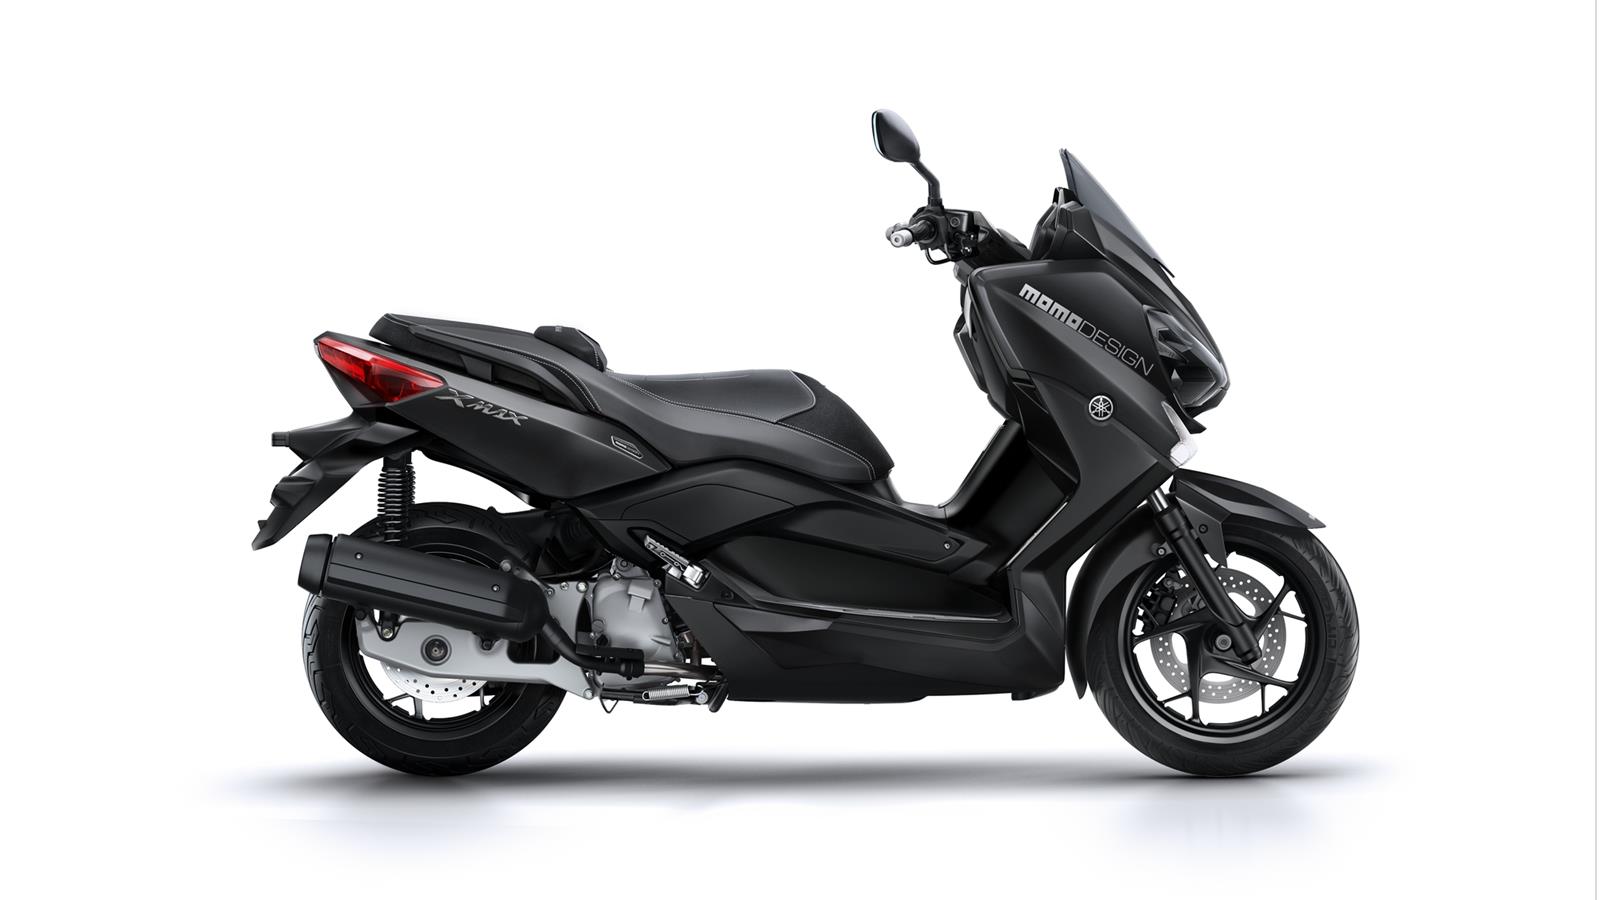 Lo stile è sempre di moda Yamaha è leader nel mercato degli scooter sportivi. Modellata dal DNA del carismatico TMAX, la gamma X-MAX di ultima generazione è al top del design e della tecnologia.